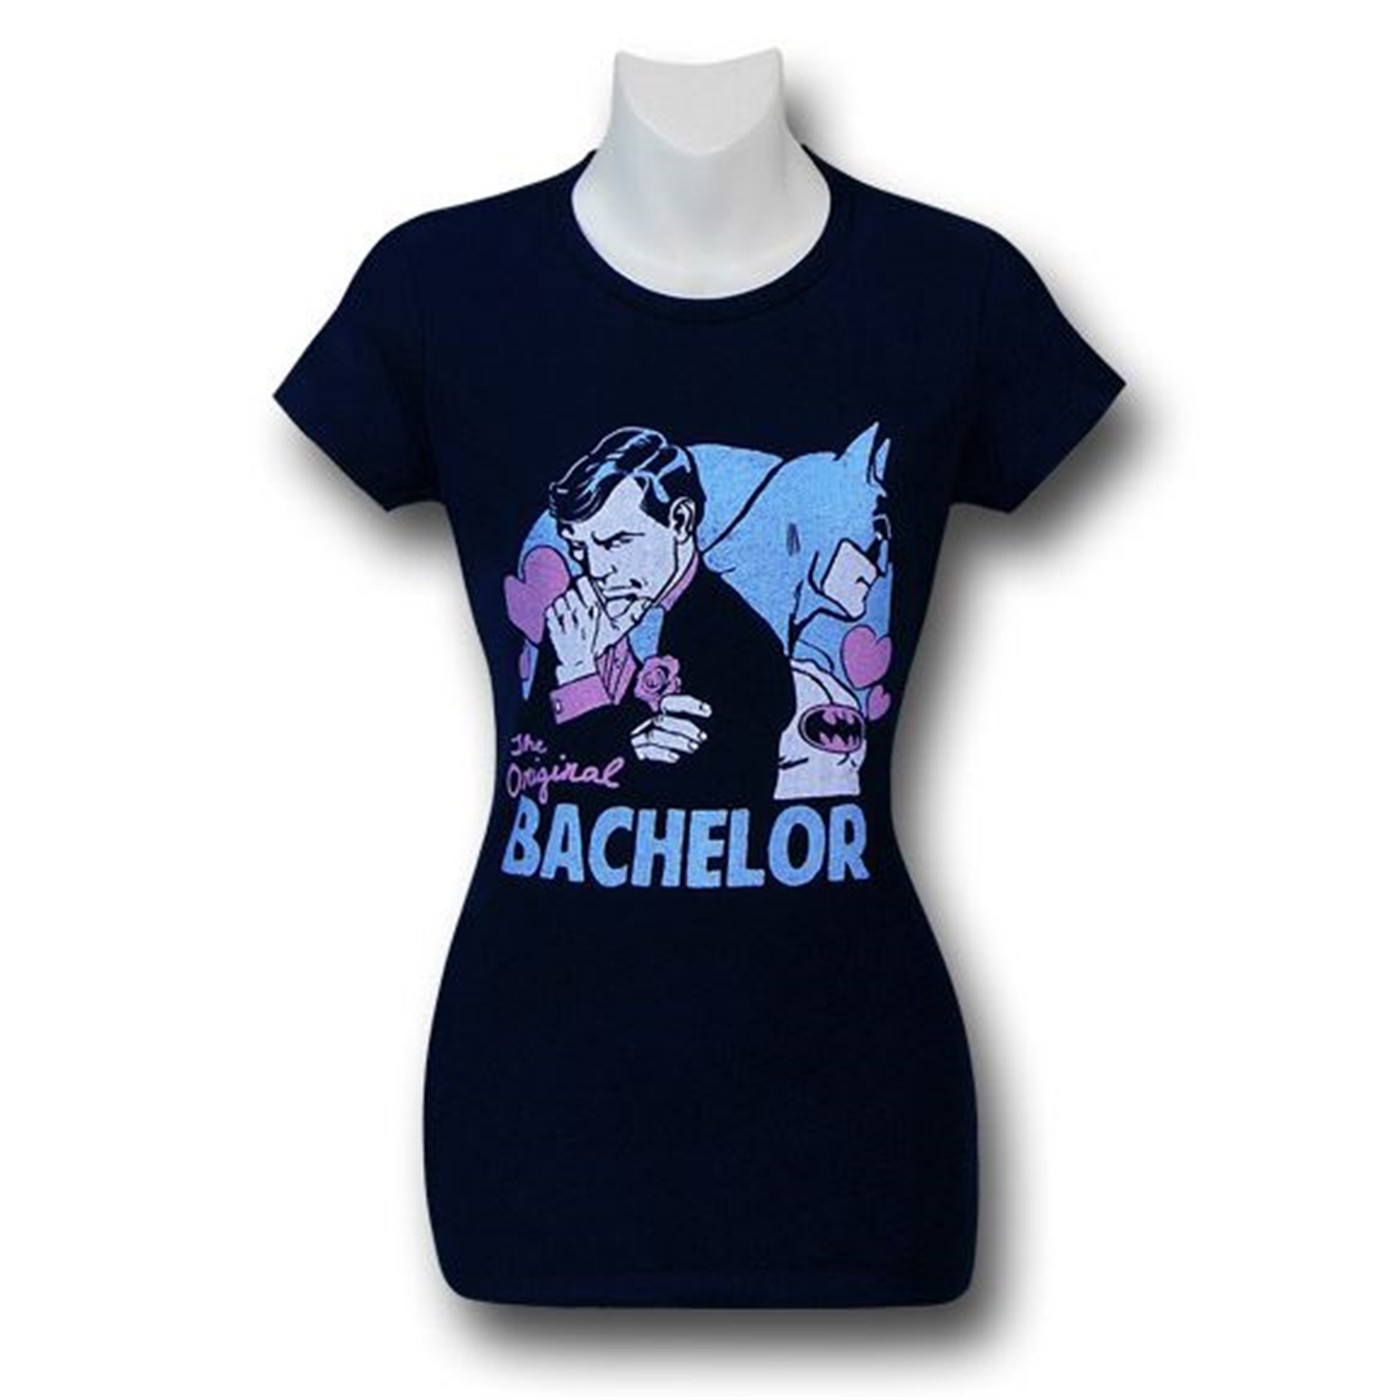 Batman Original Bachelor Women's T-Shirt